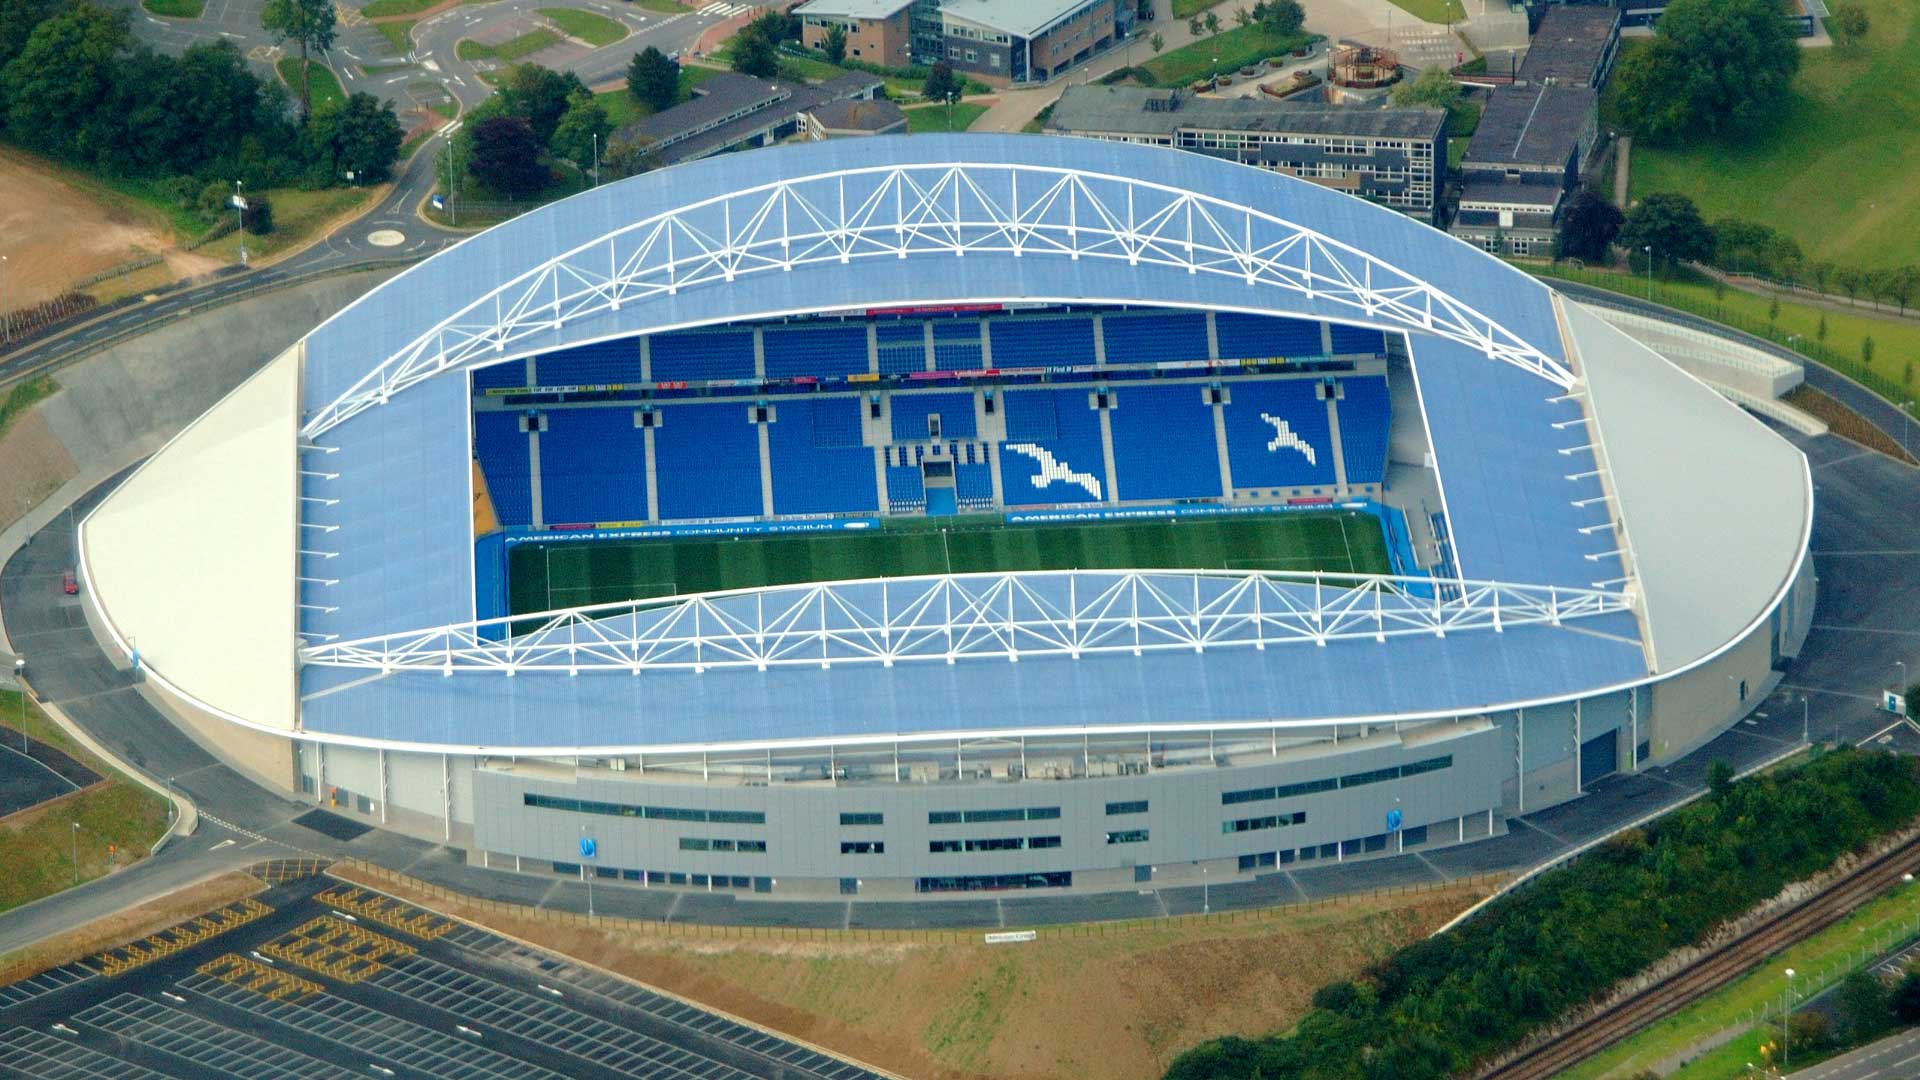 Brighton's stadium